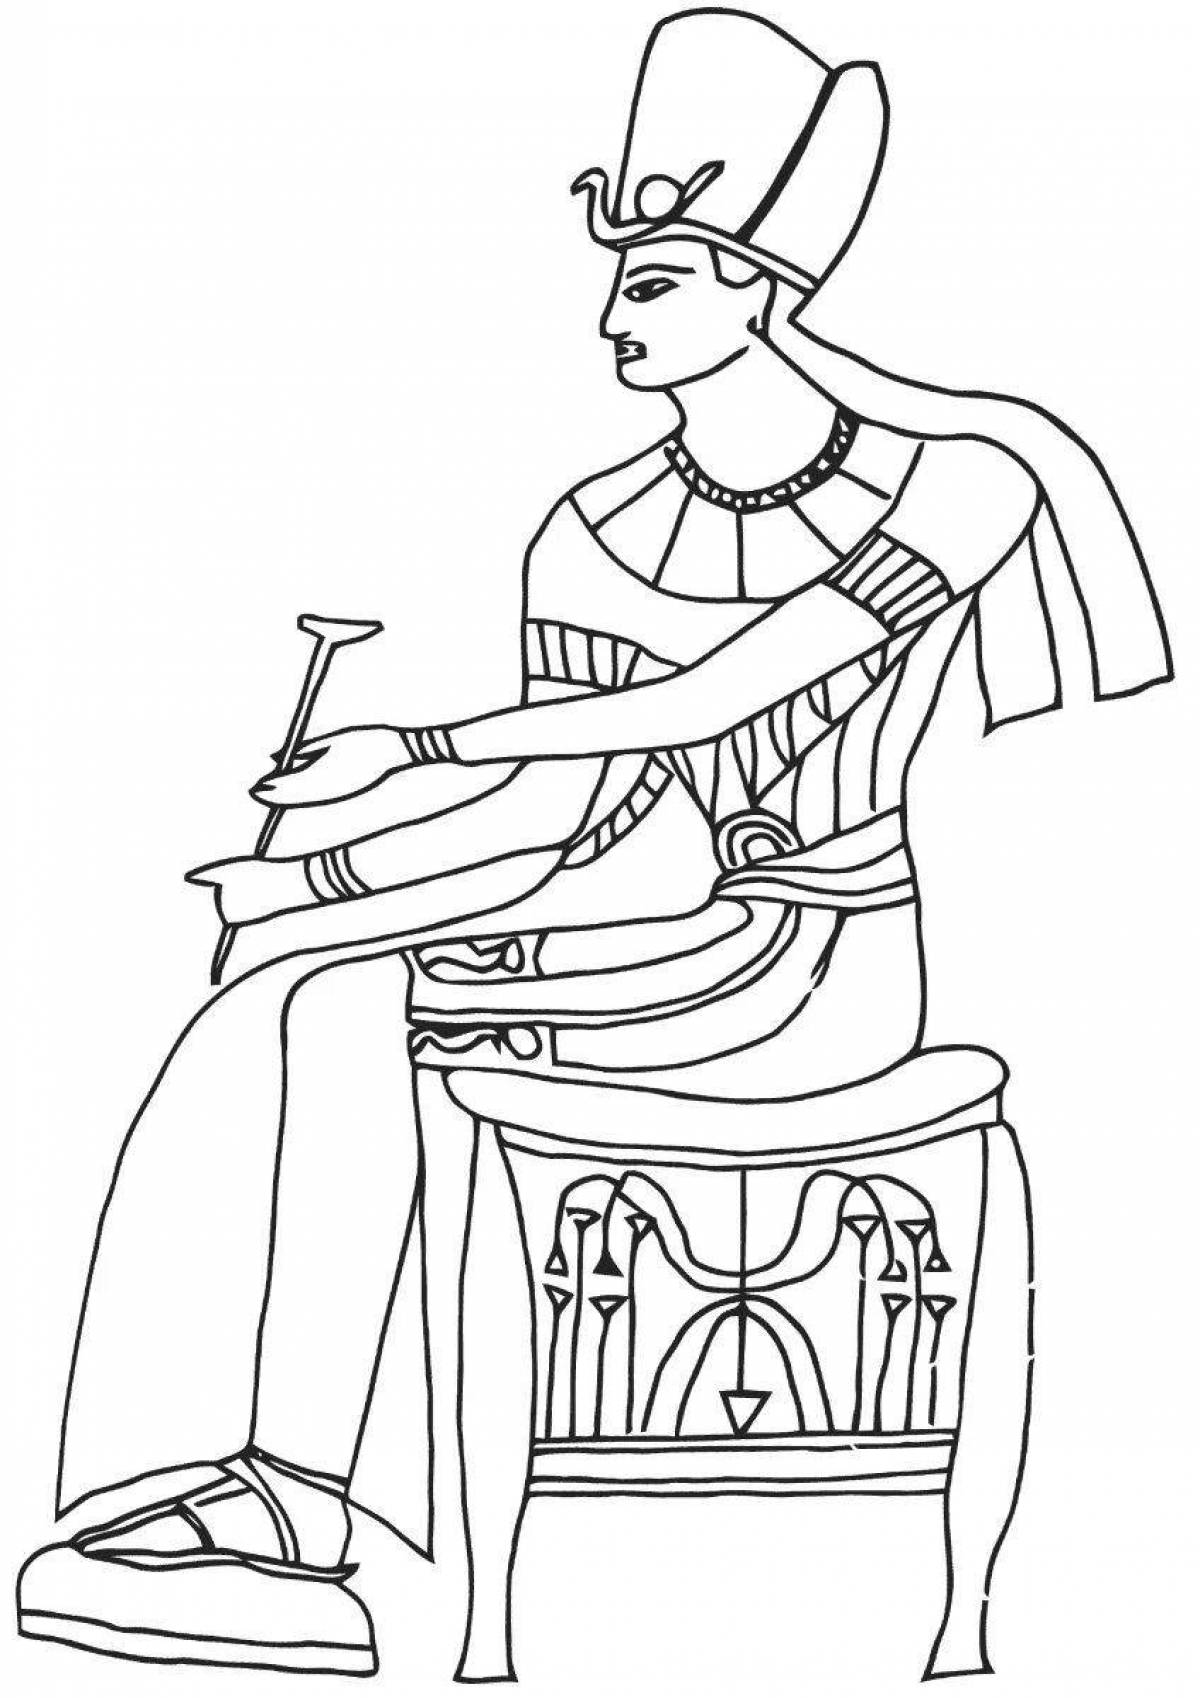 Royal pharaoh coloring page